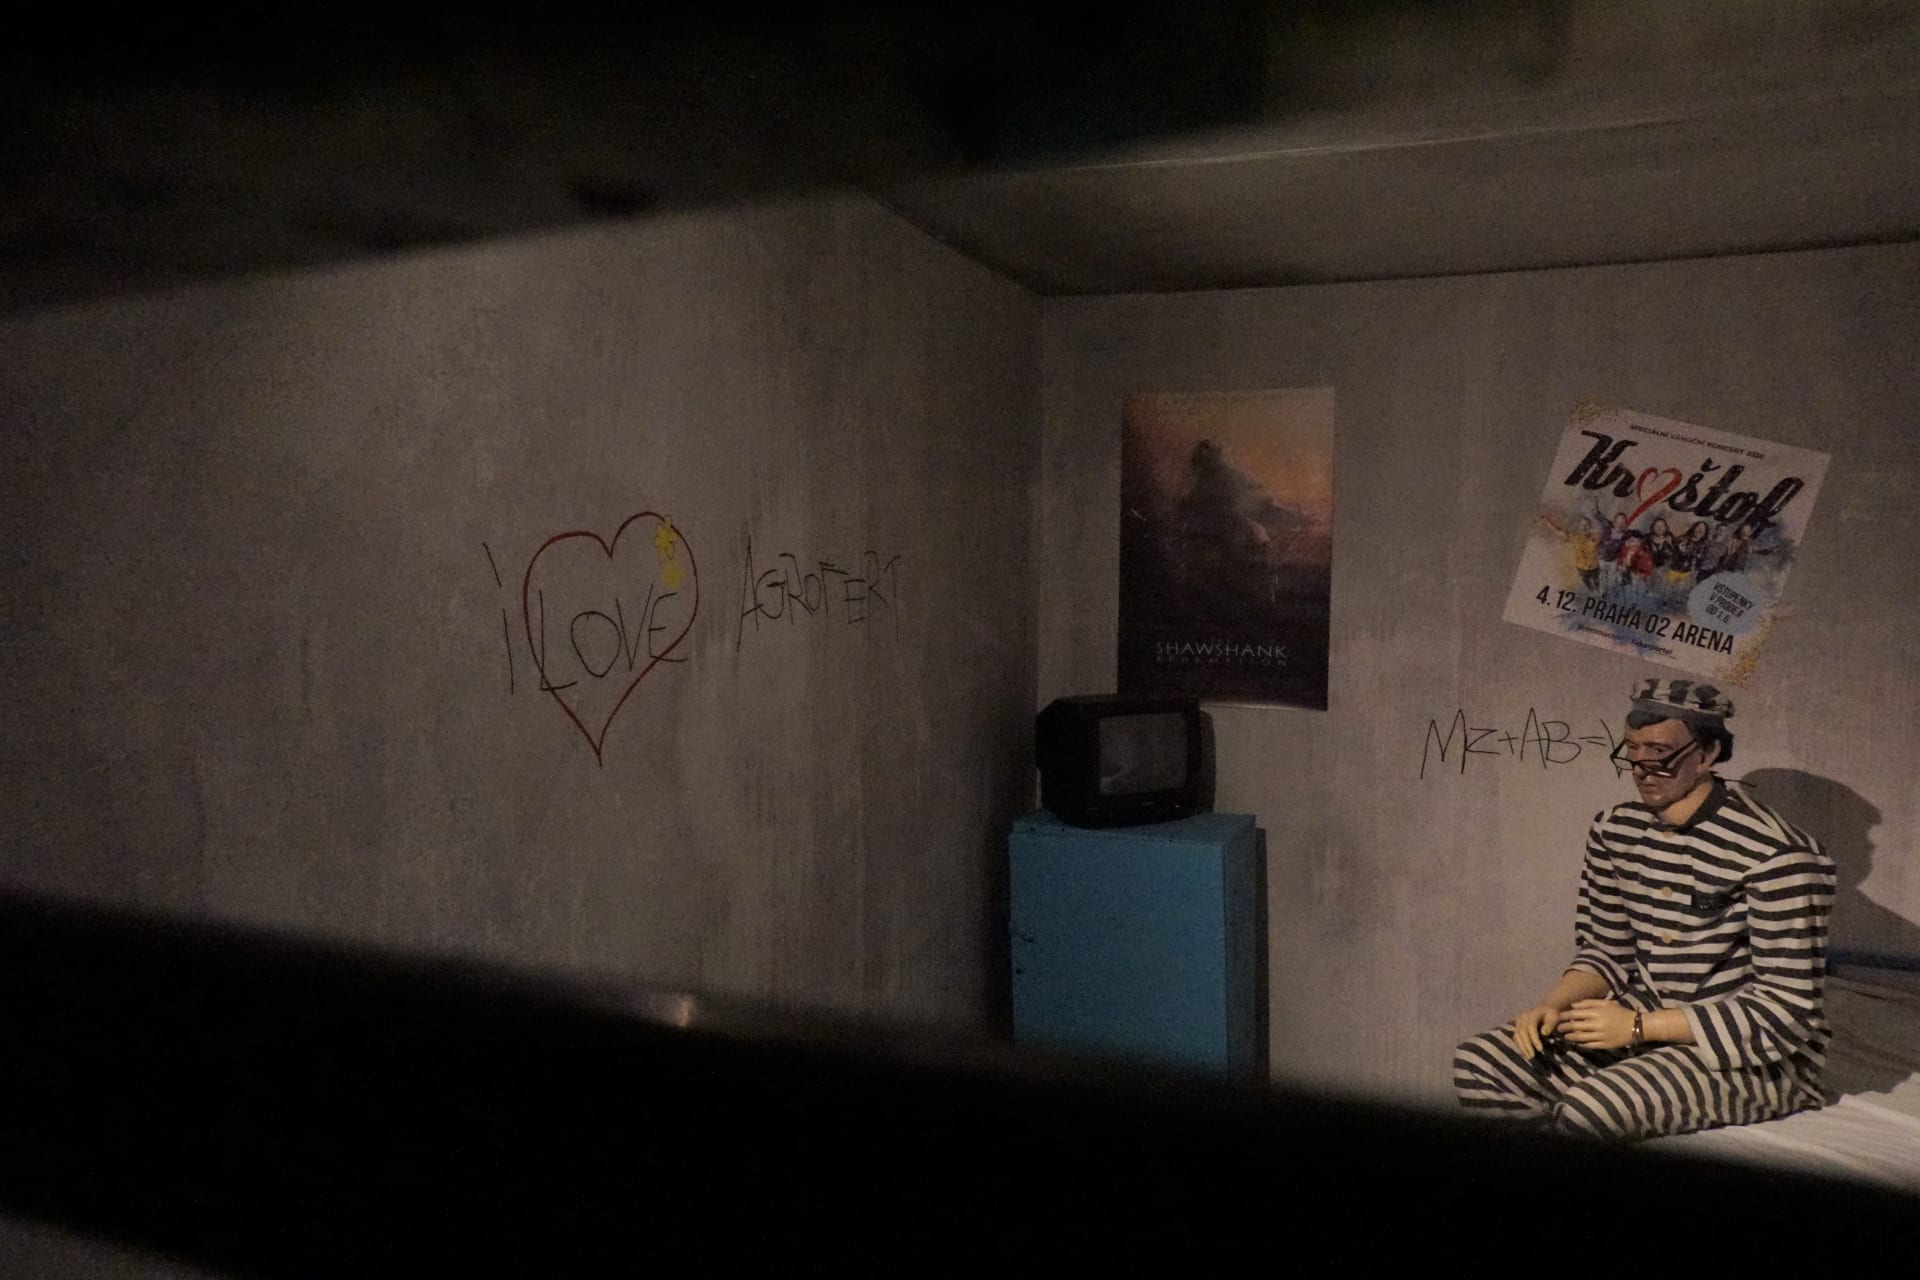 Ve vězeňské cele Andreje Babiše lze spatřit vyrytý vzkaz ve zdi „I love Agrofert“, opodál je pak plakát ikonického snímku Vykoupení z věznice Shawshank, ale také plakát skupiny Kryštof.